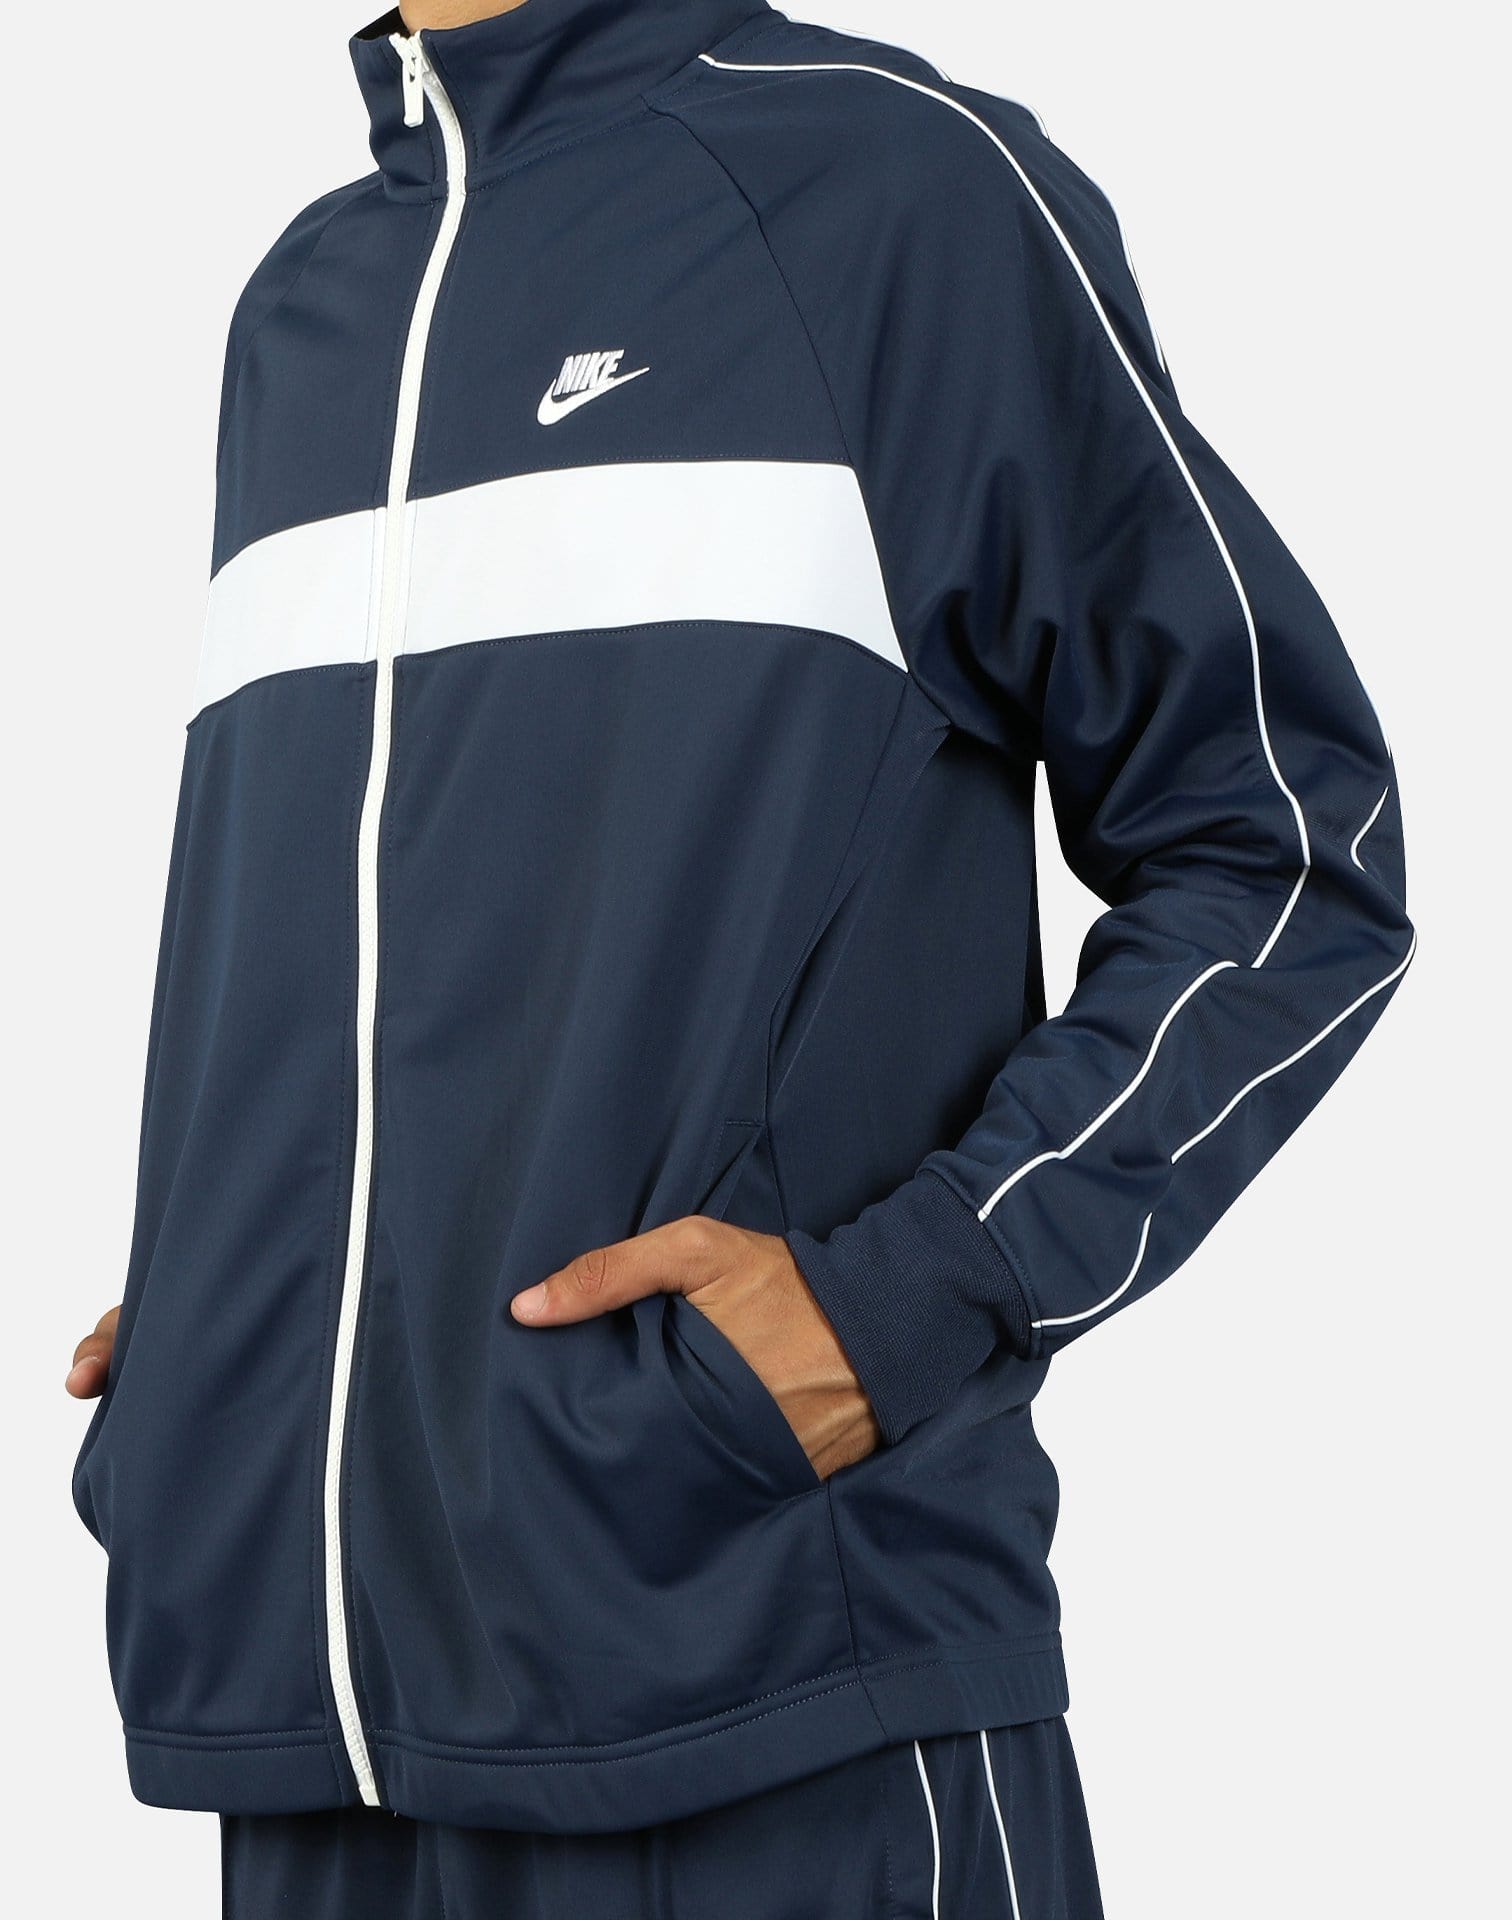 Nike NSW Men's Track Jacket